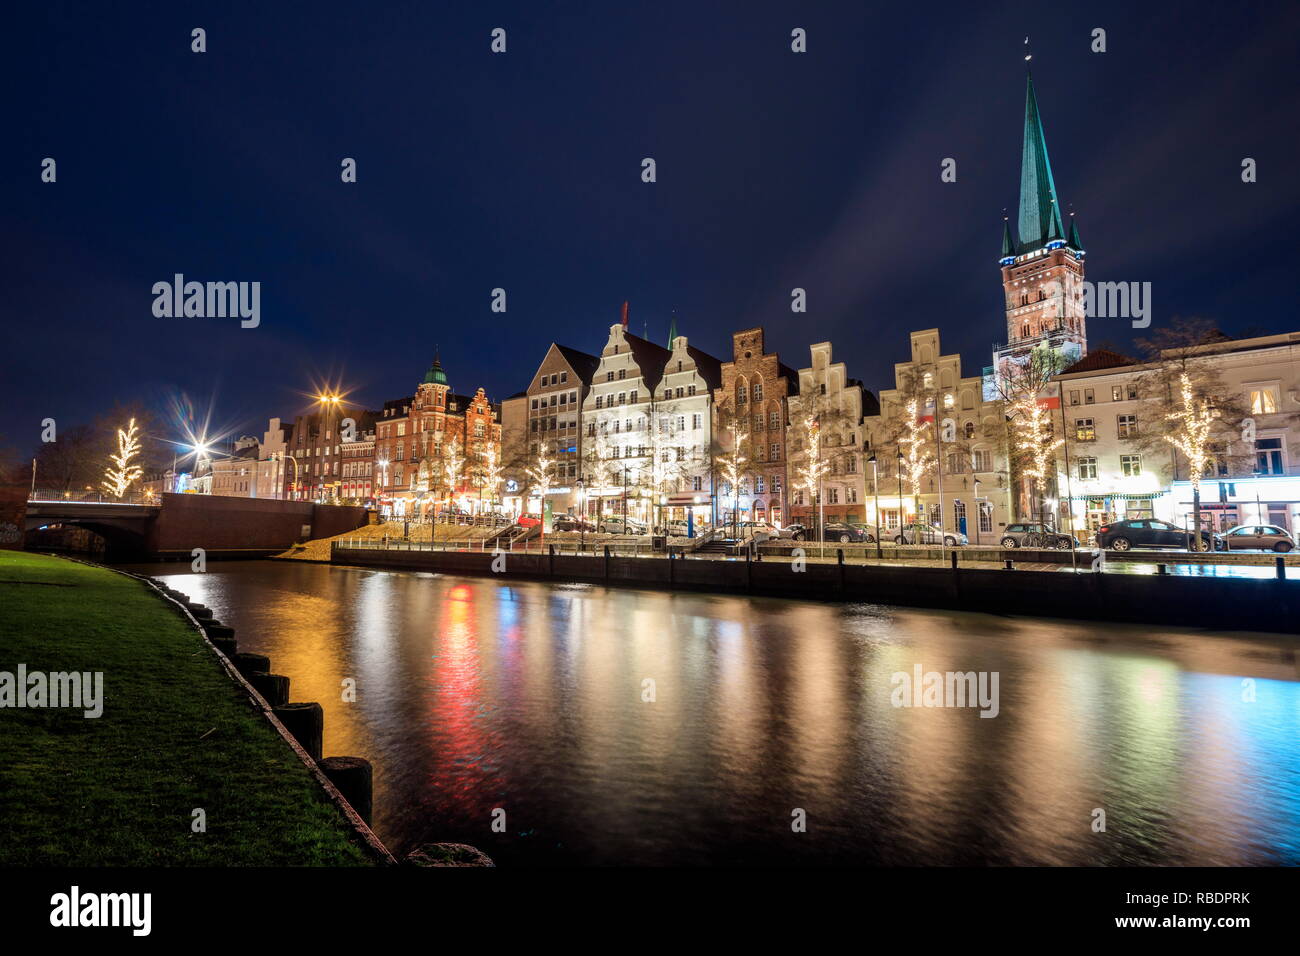 Vue de la nuit de maisons typiques et la cathédrale reflète dans rivière Trave Lübeck Schleswig-holstein, Allemagne Europe Banque D'Images